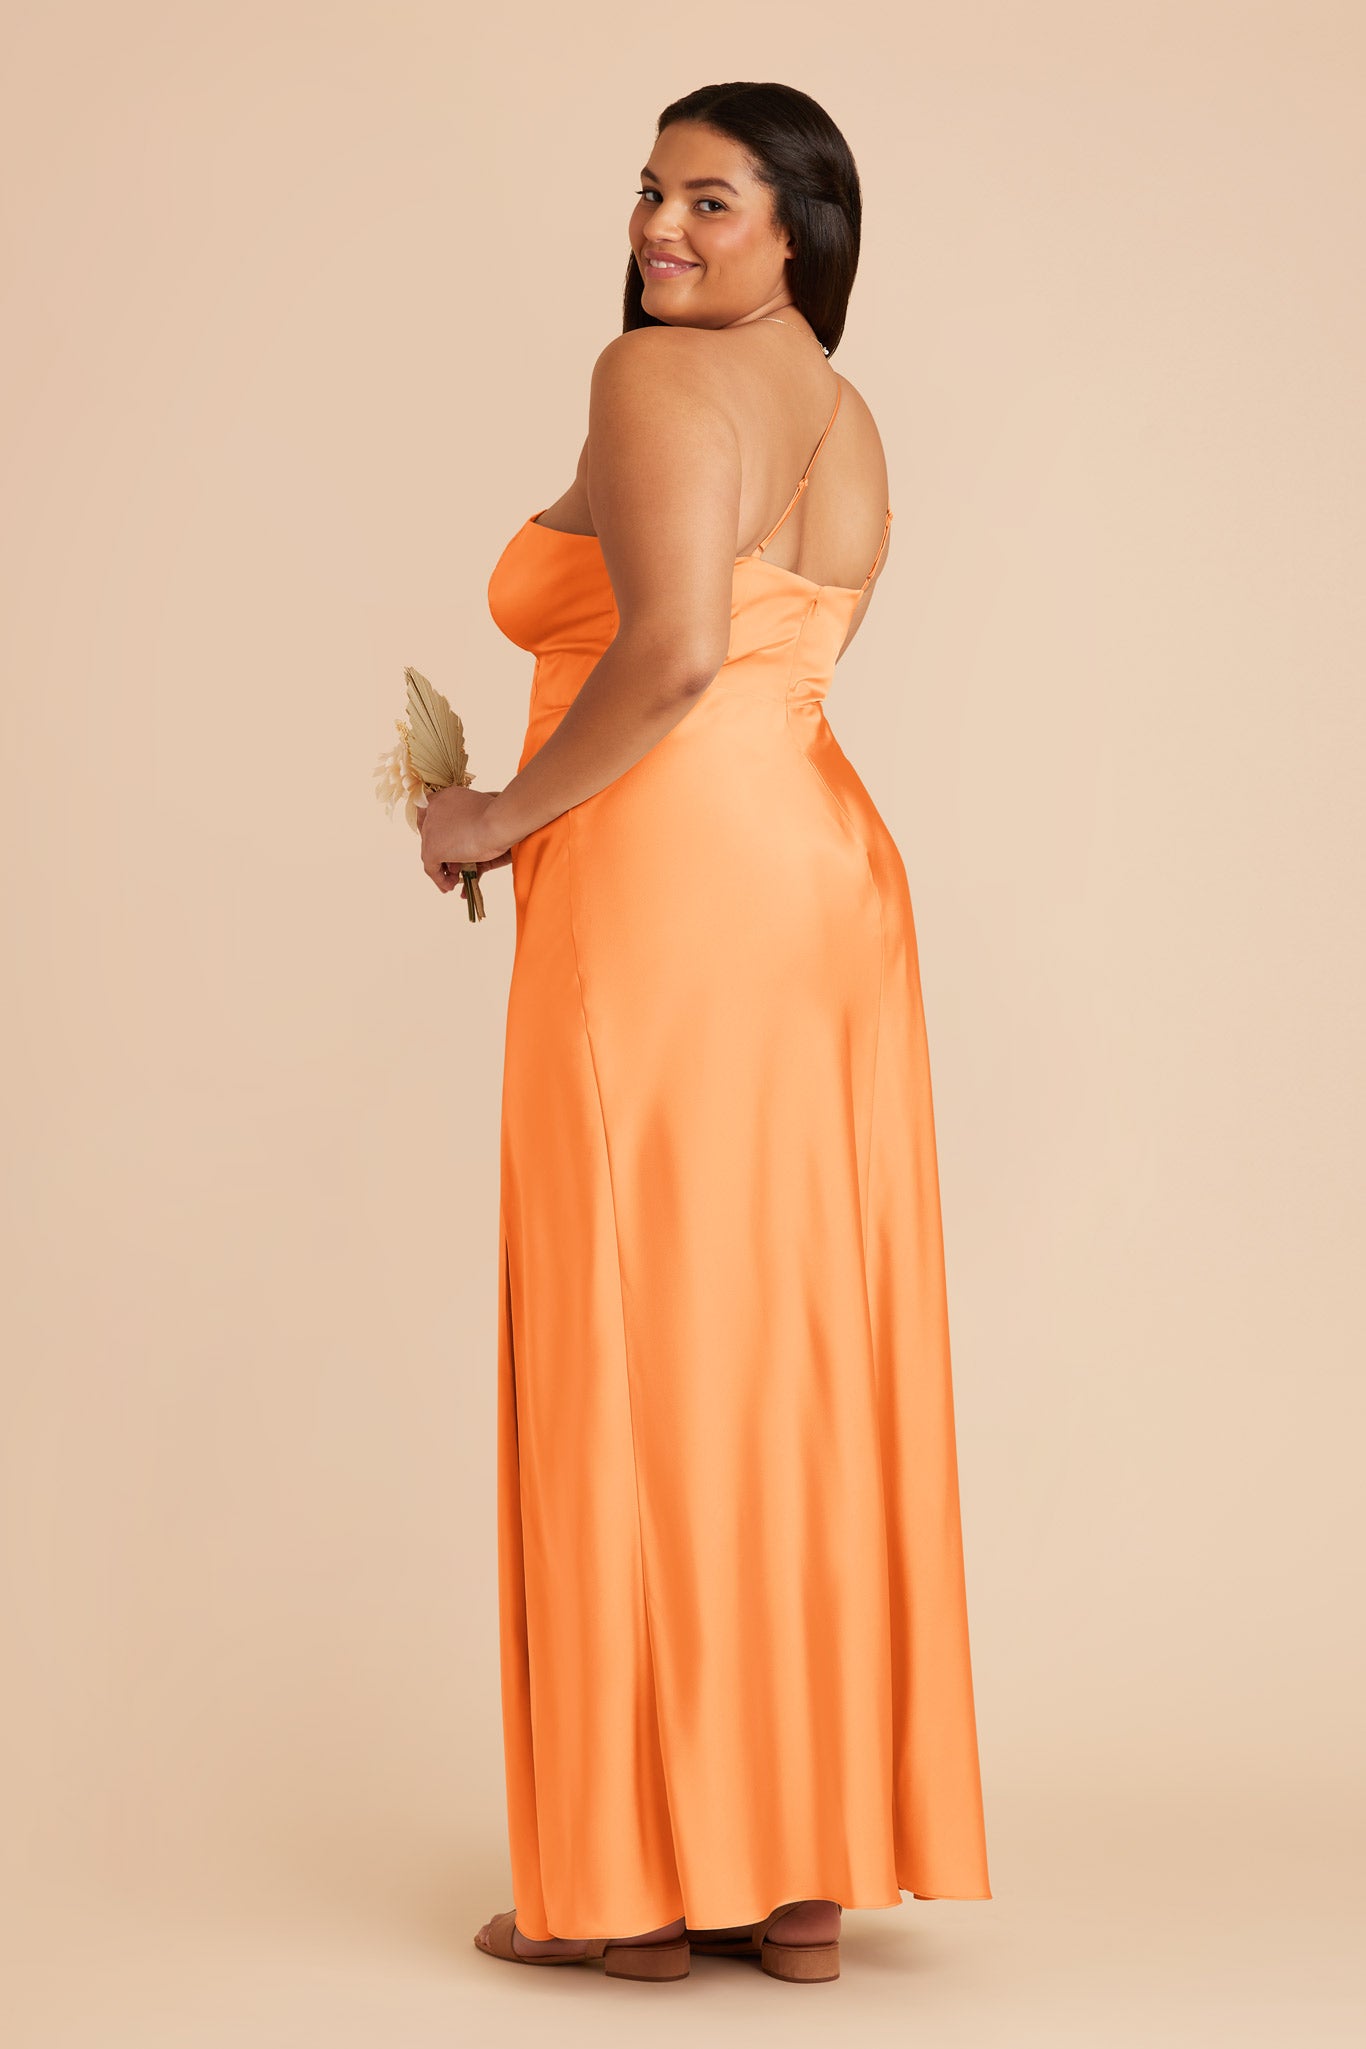 Apricot Kensie Matte Satin Dress by Birdy Grey